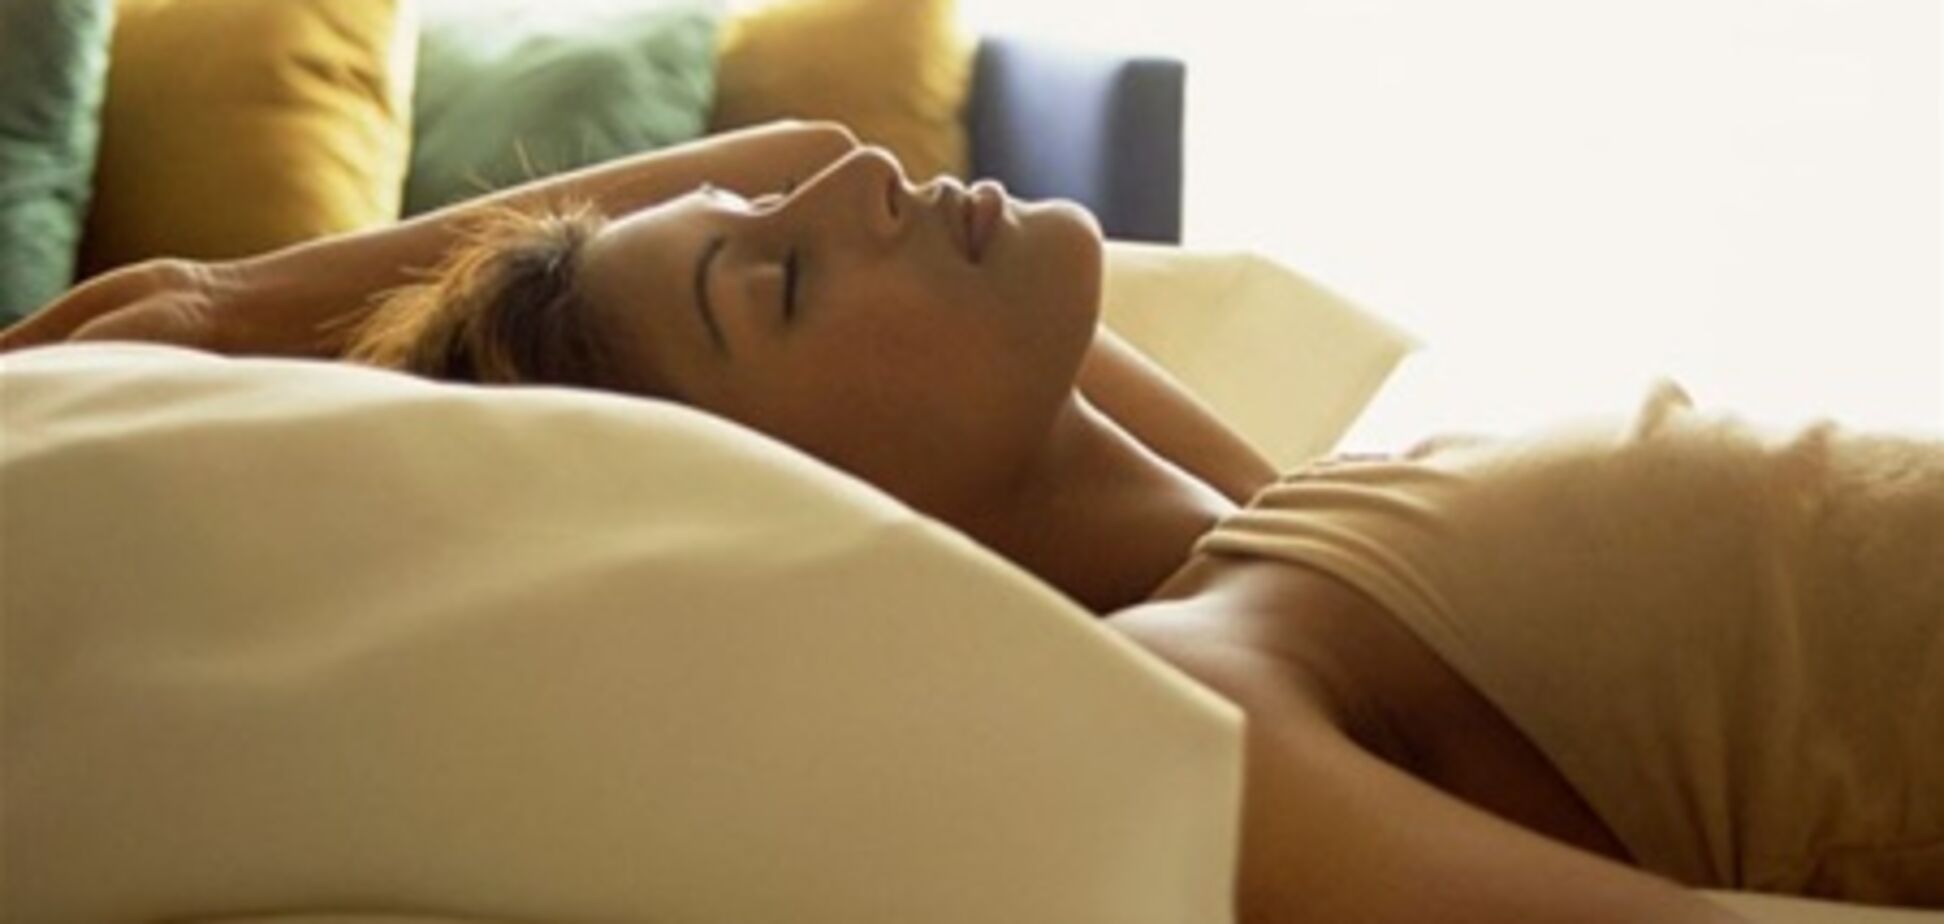 30 минут дневного сна исцеляют организм